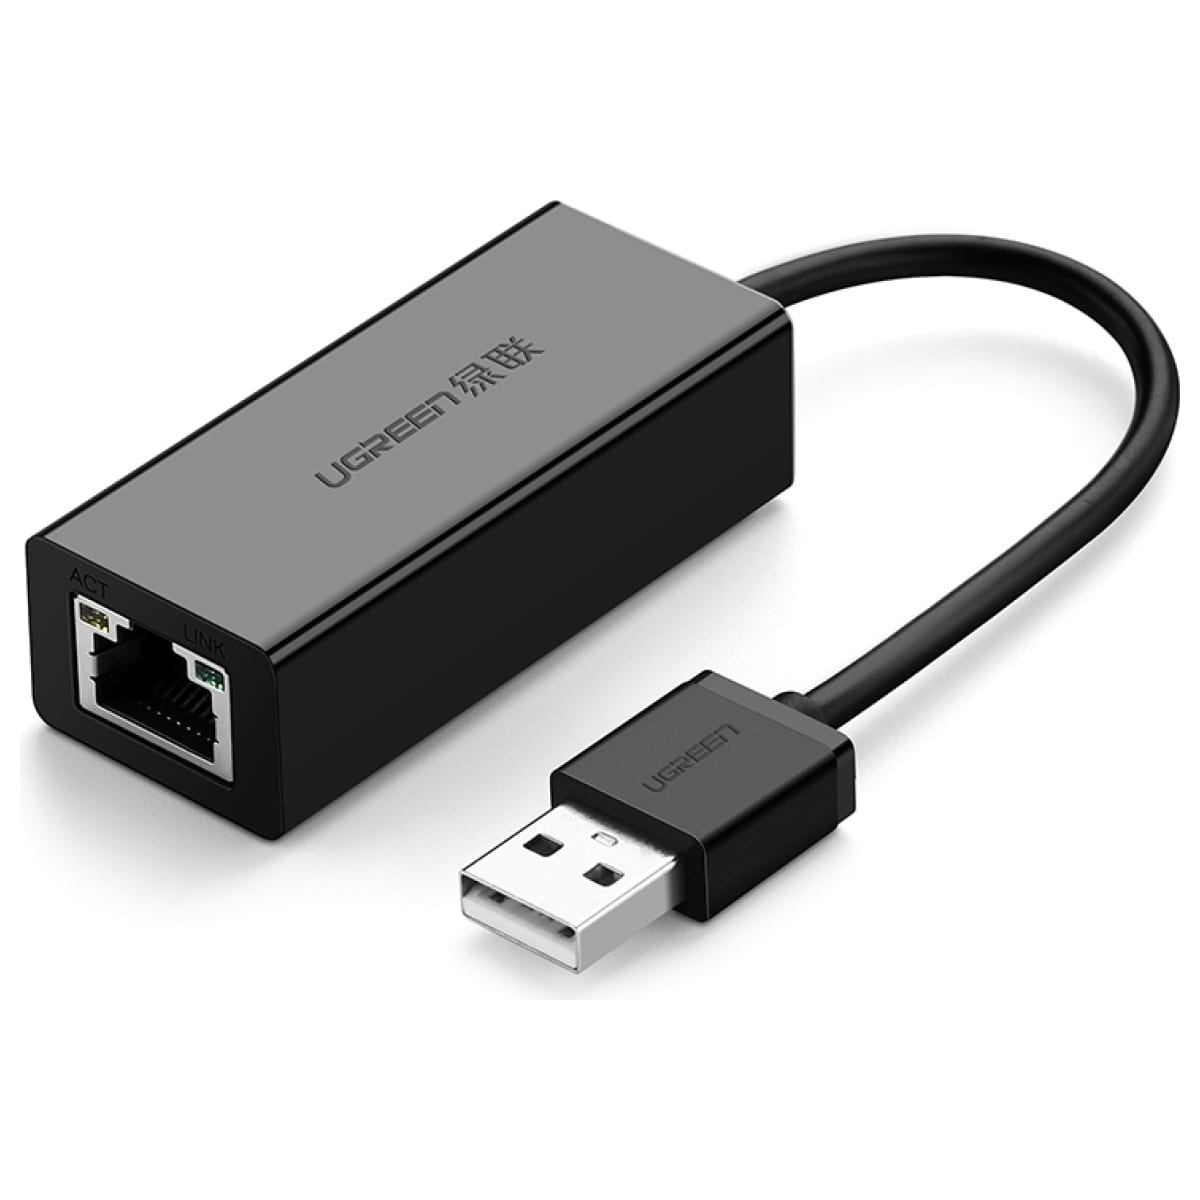 Сетевой адаптер UGREEN USB 2.0, 10/100 Мбит/с, цвет черный (20254) сетевой адаптер ugreen ug 20254